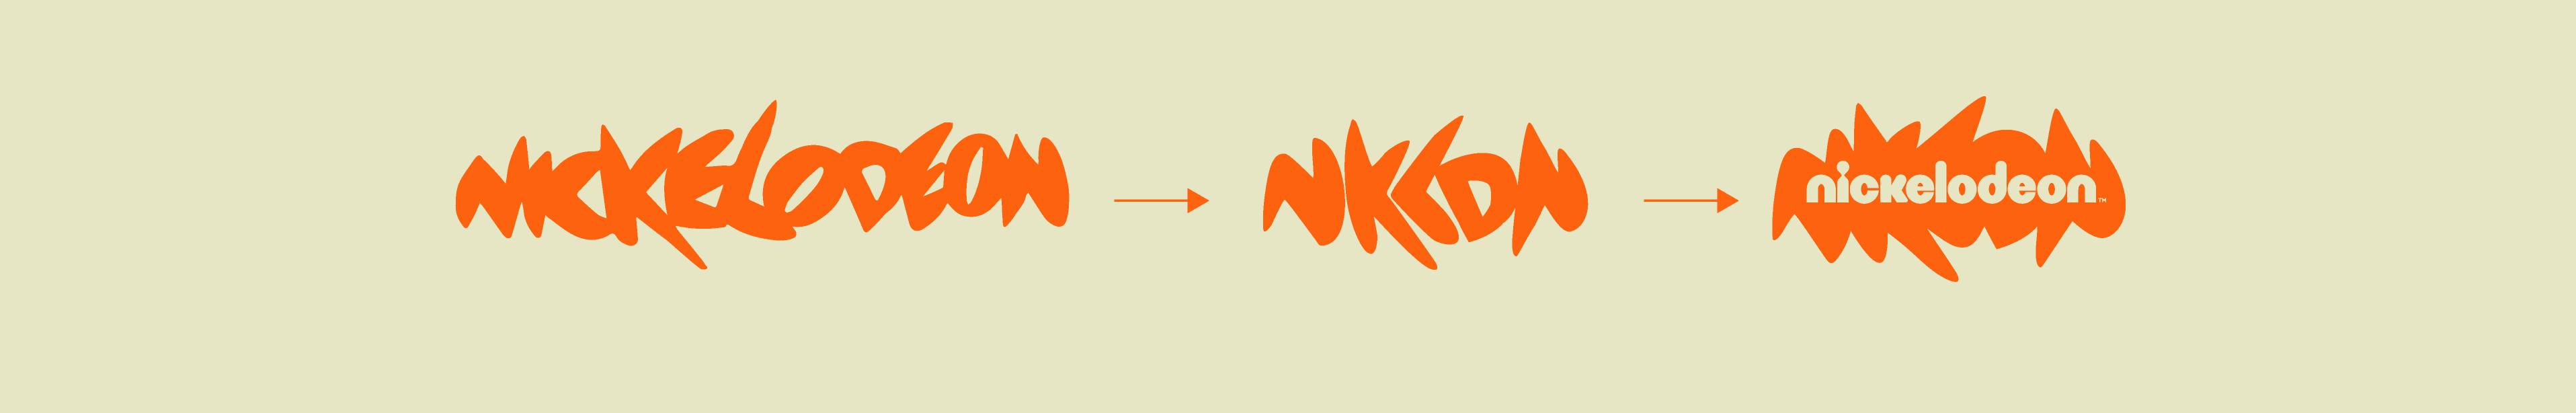 YG-NICK-logo-2